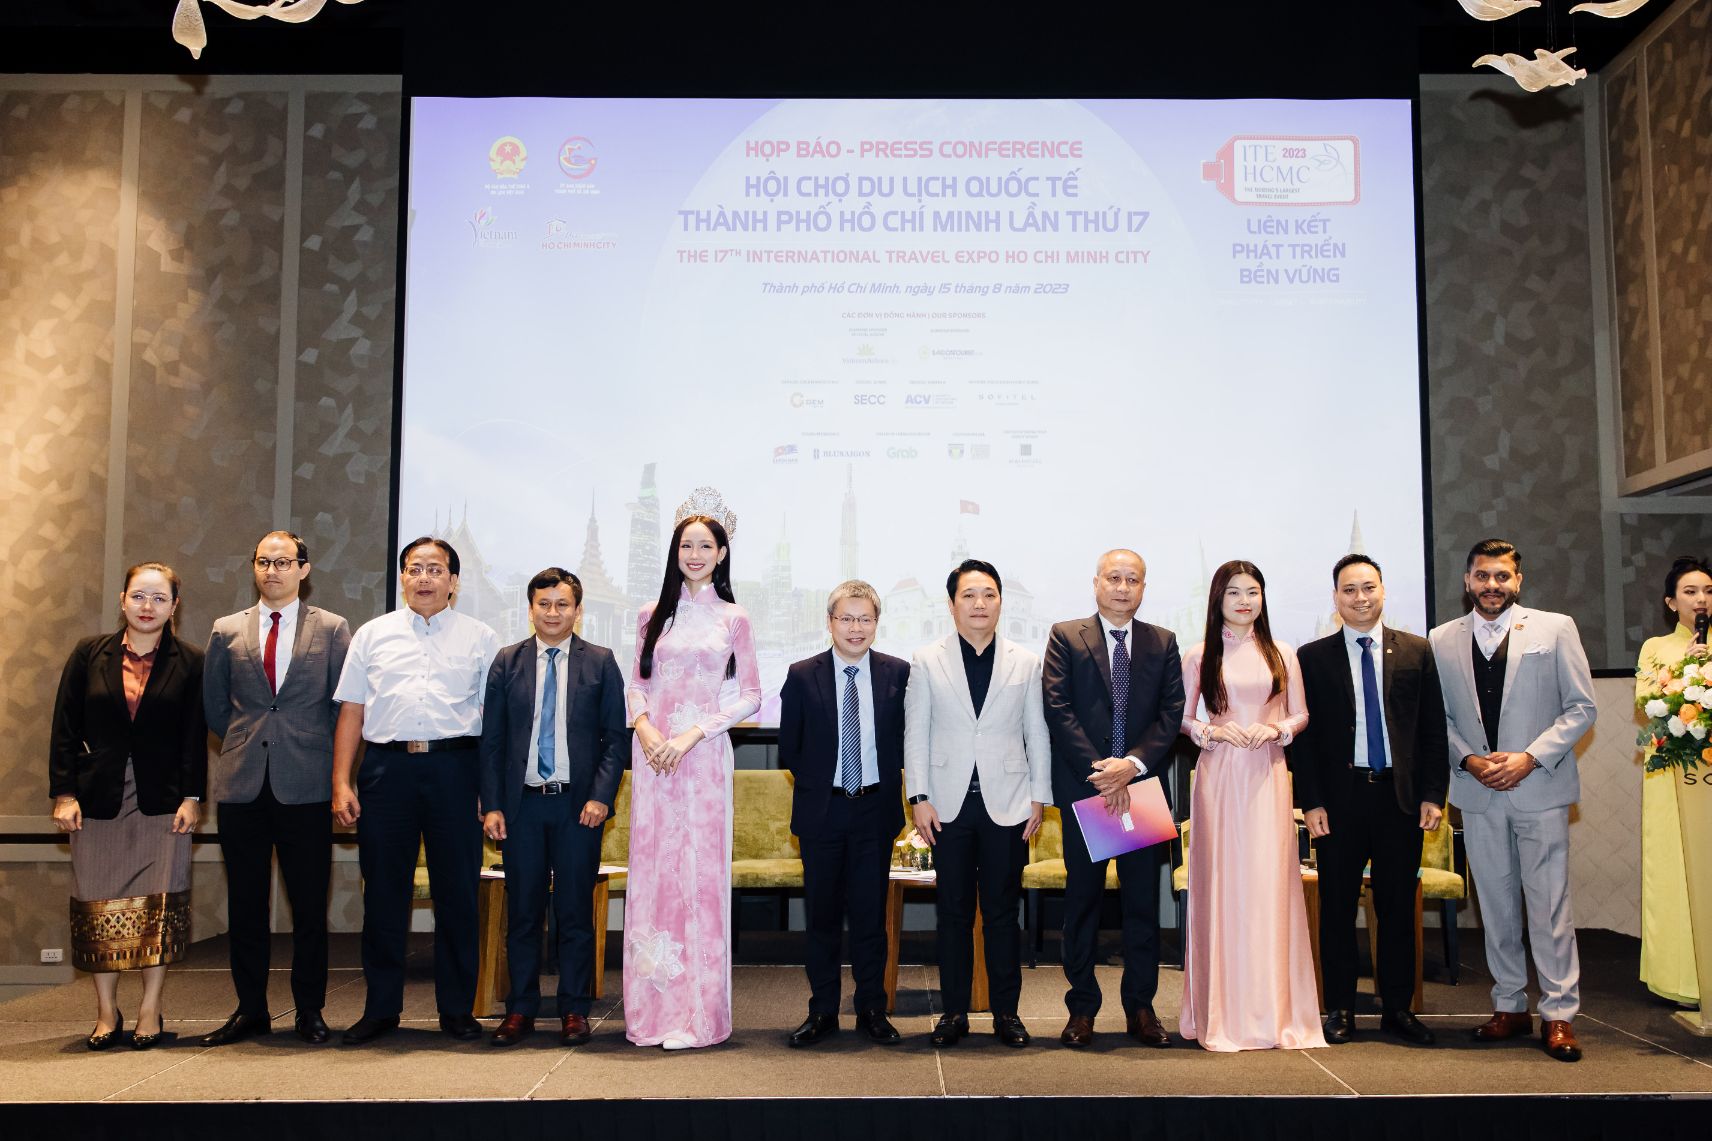 Hội chợ ITE HCMC 2023 1 Hội chợ ITE HCMC 2023: Cơ hội để du lịch Việt bắt thời cơ, tăng tốc phát triển